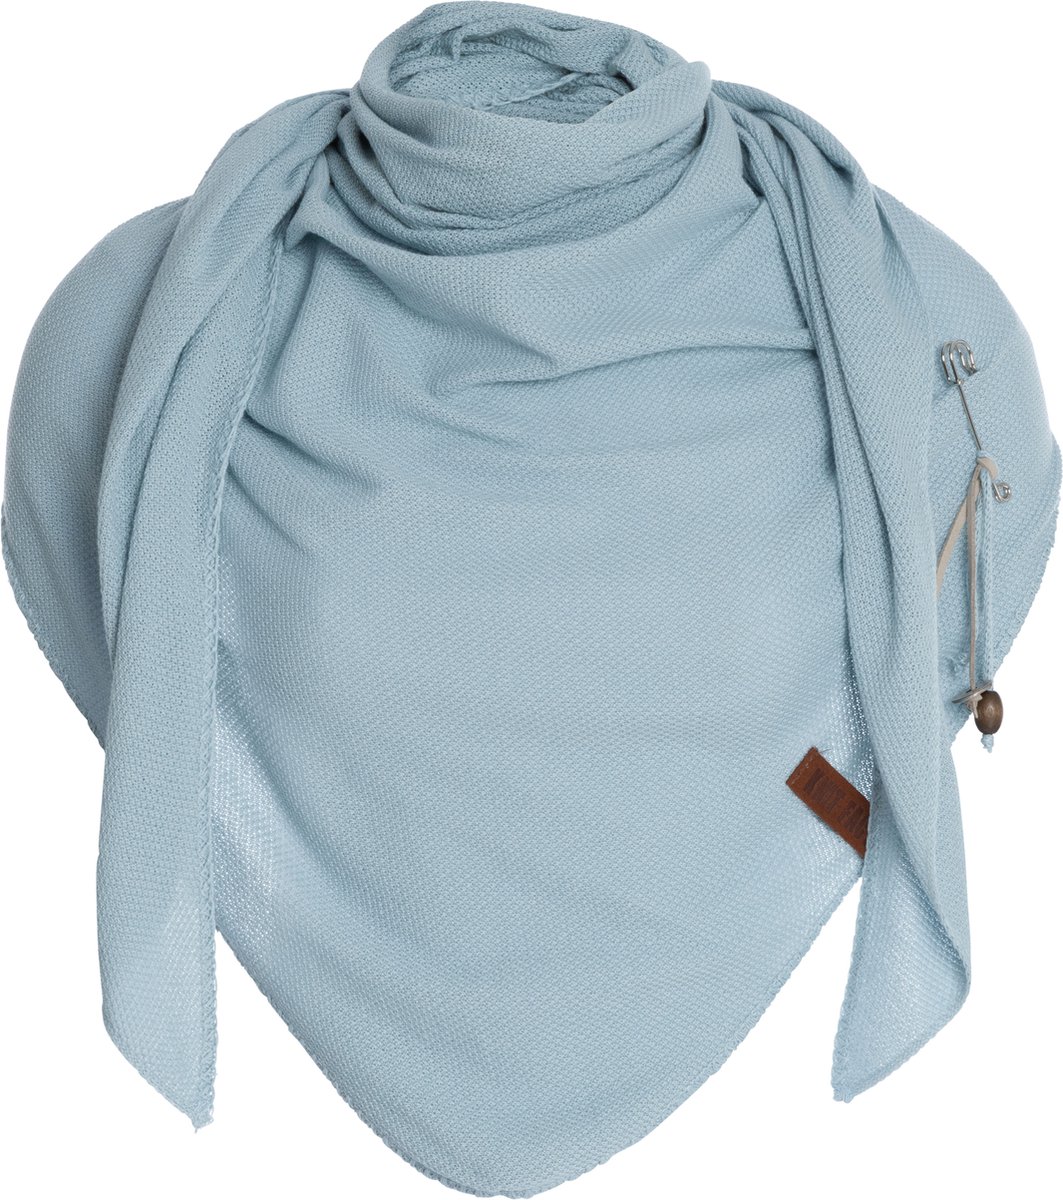 Knit Factory Lola Gebreide Omslagdoek - Driehoek Sjaal Dames - Katoenen sjaal - Luchtige Sjaal voor de lente, zomer en herfst - Stola - Iced Blue - 190x85 cm - Inclusief sierspeld